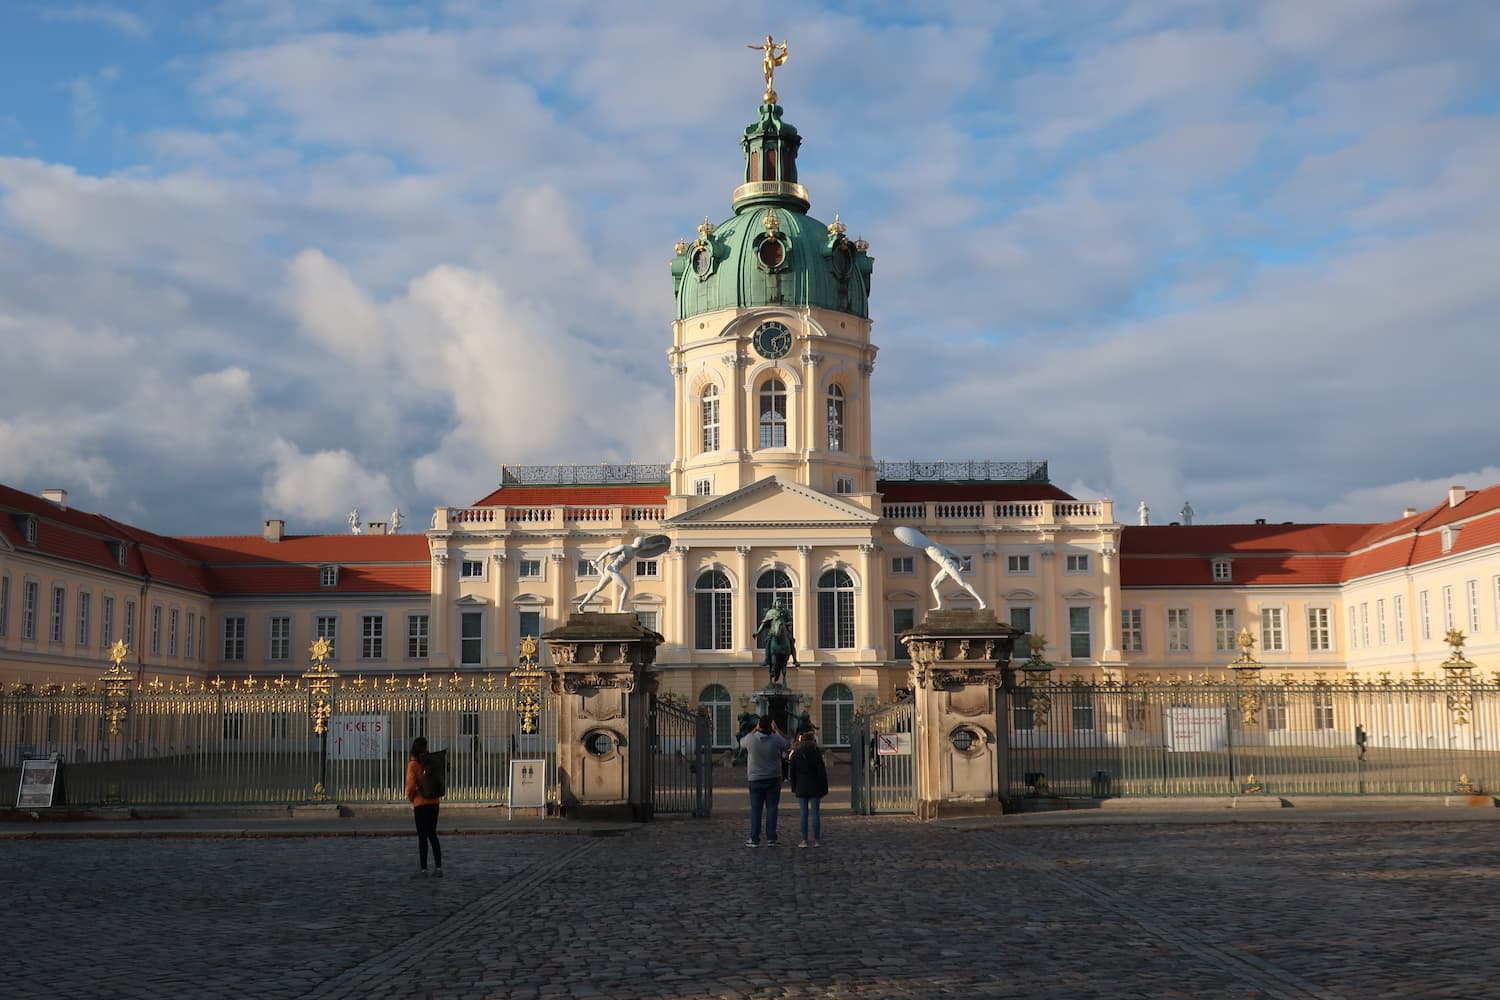 ベルリンで必見の美しい宮殿「シャルロッテンブルク宮殿」